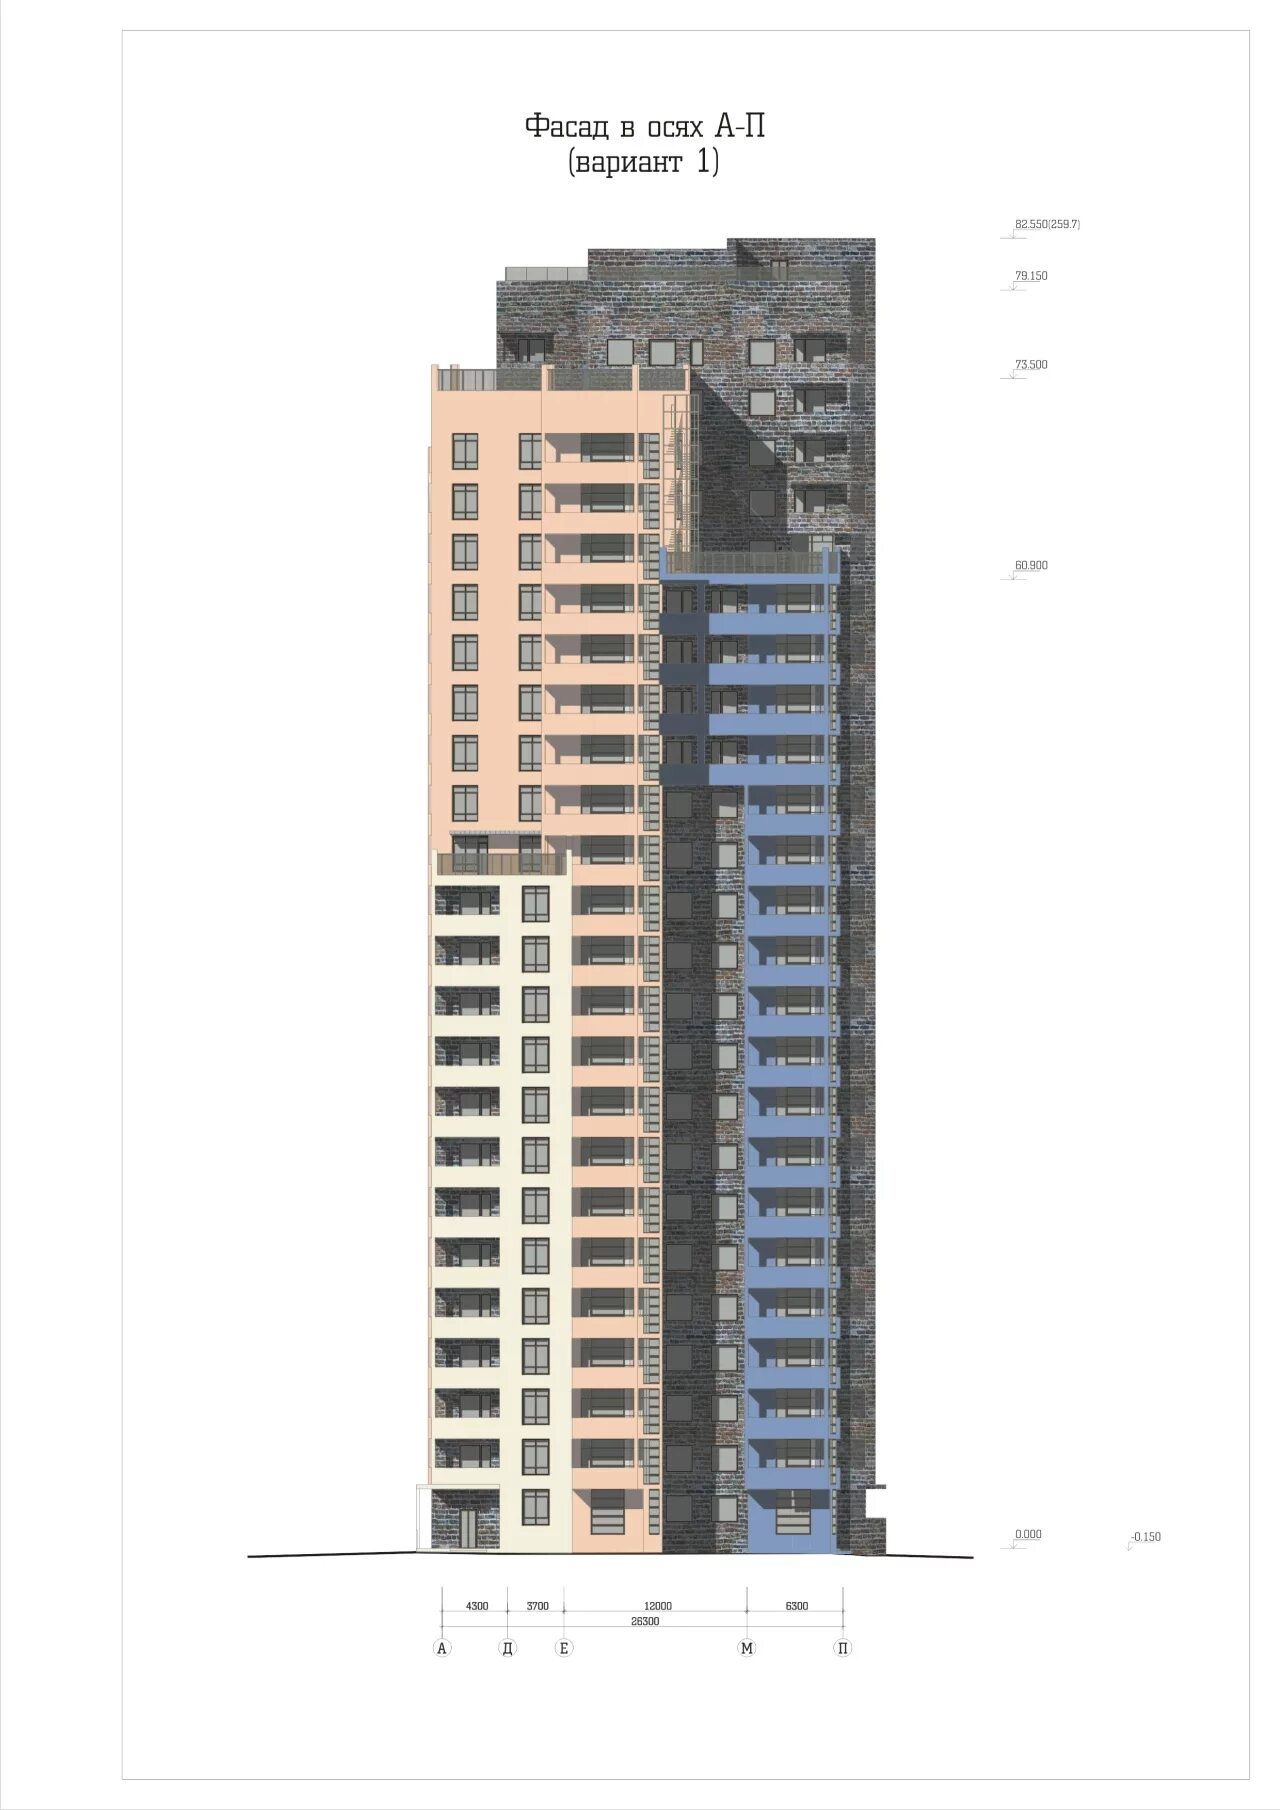 Высота дома 25 этажей. Высота 24 этажного дома. Высота этажного дома в метрах. Высота 24 этажного здания в метрах. 24 Этажный дом высота в метрах.